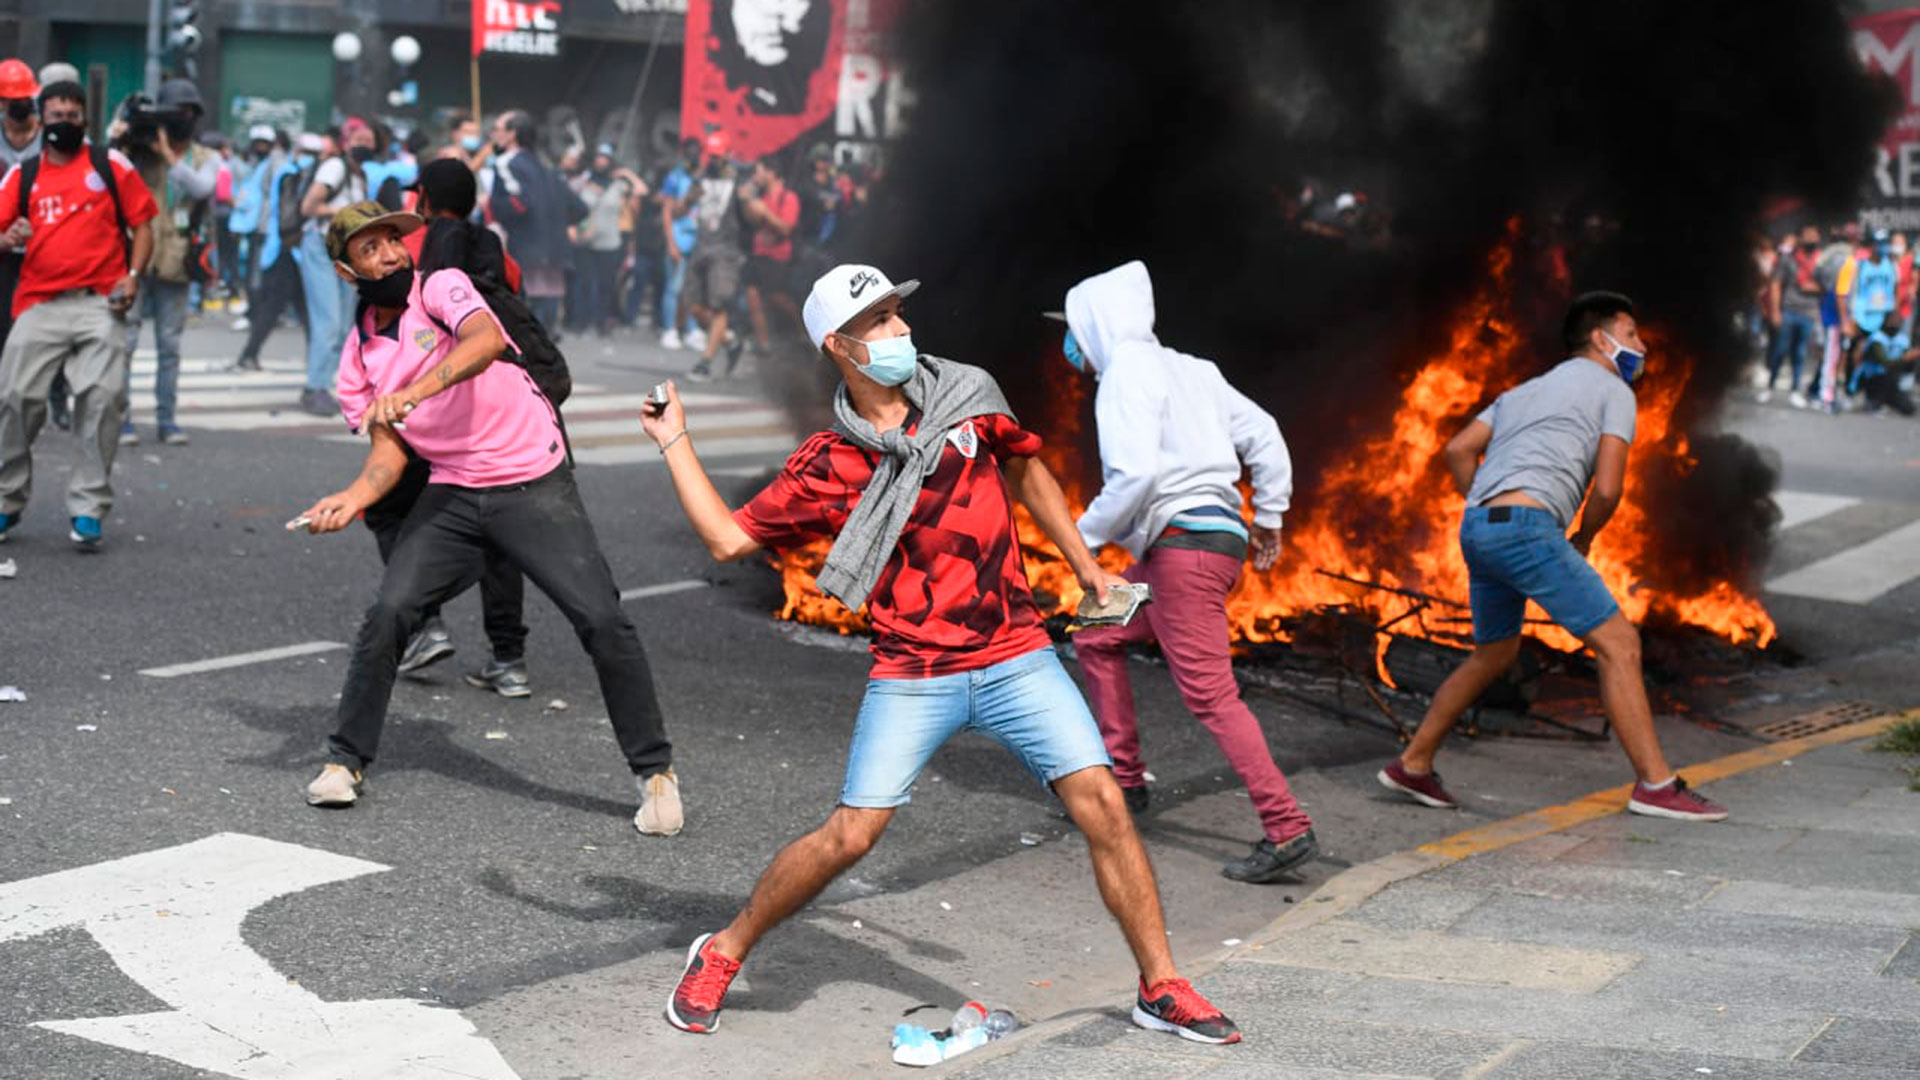 Grupos violentos rompieron con el clíma pacífico de la manifestación